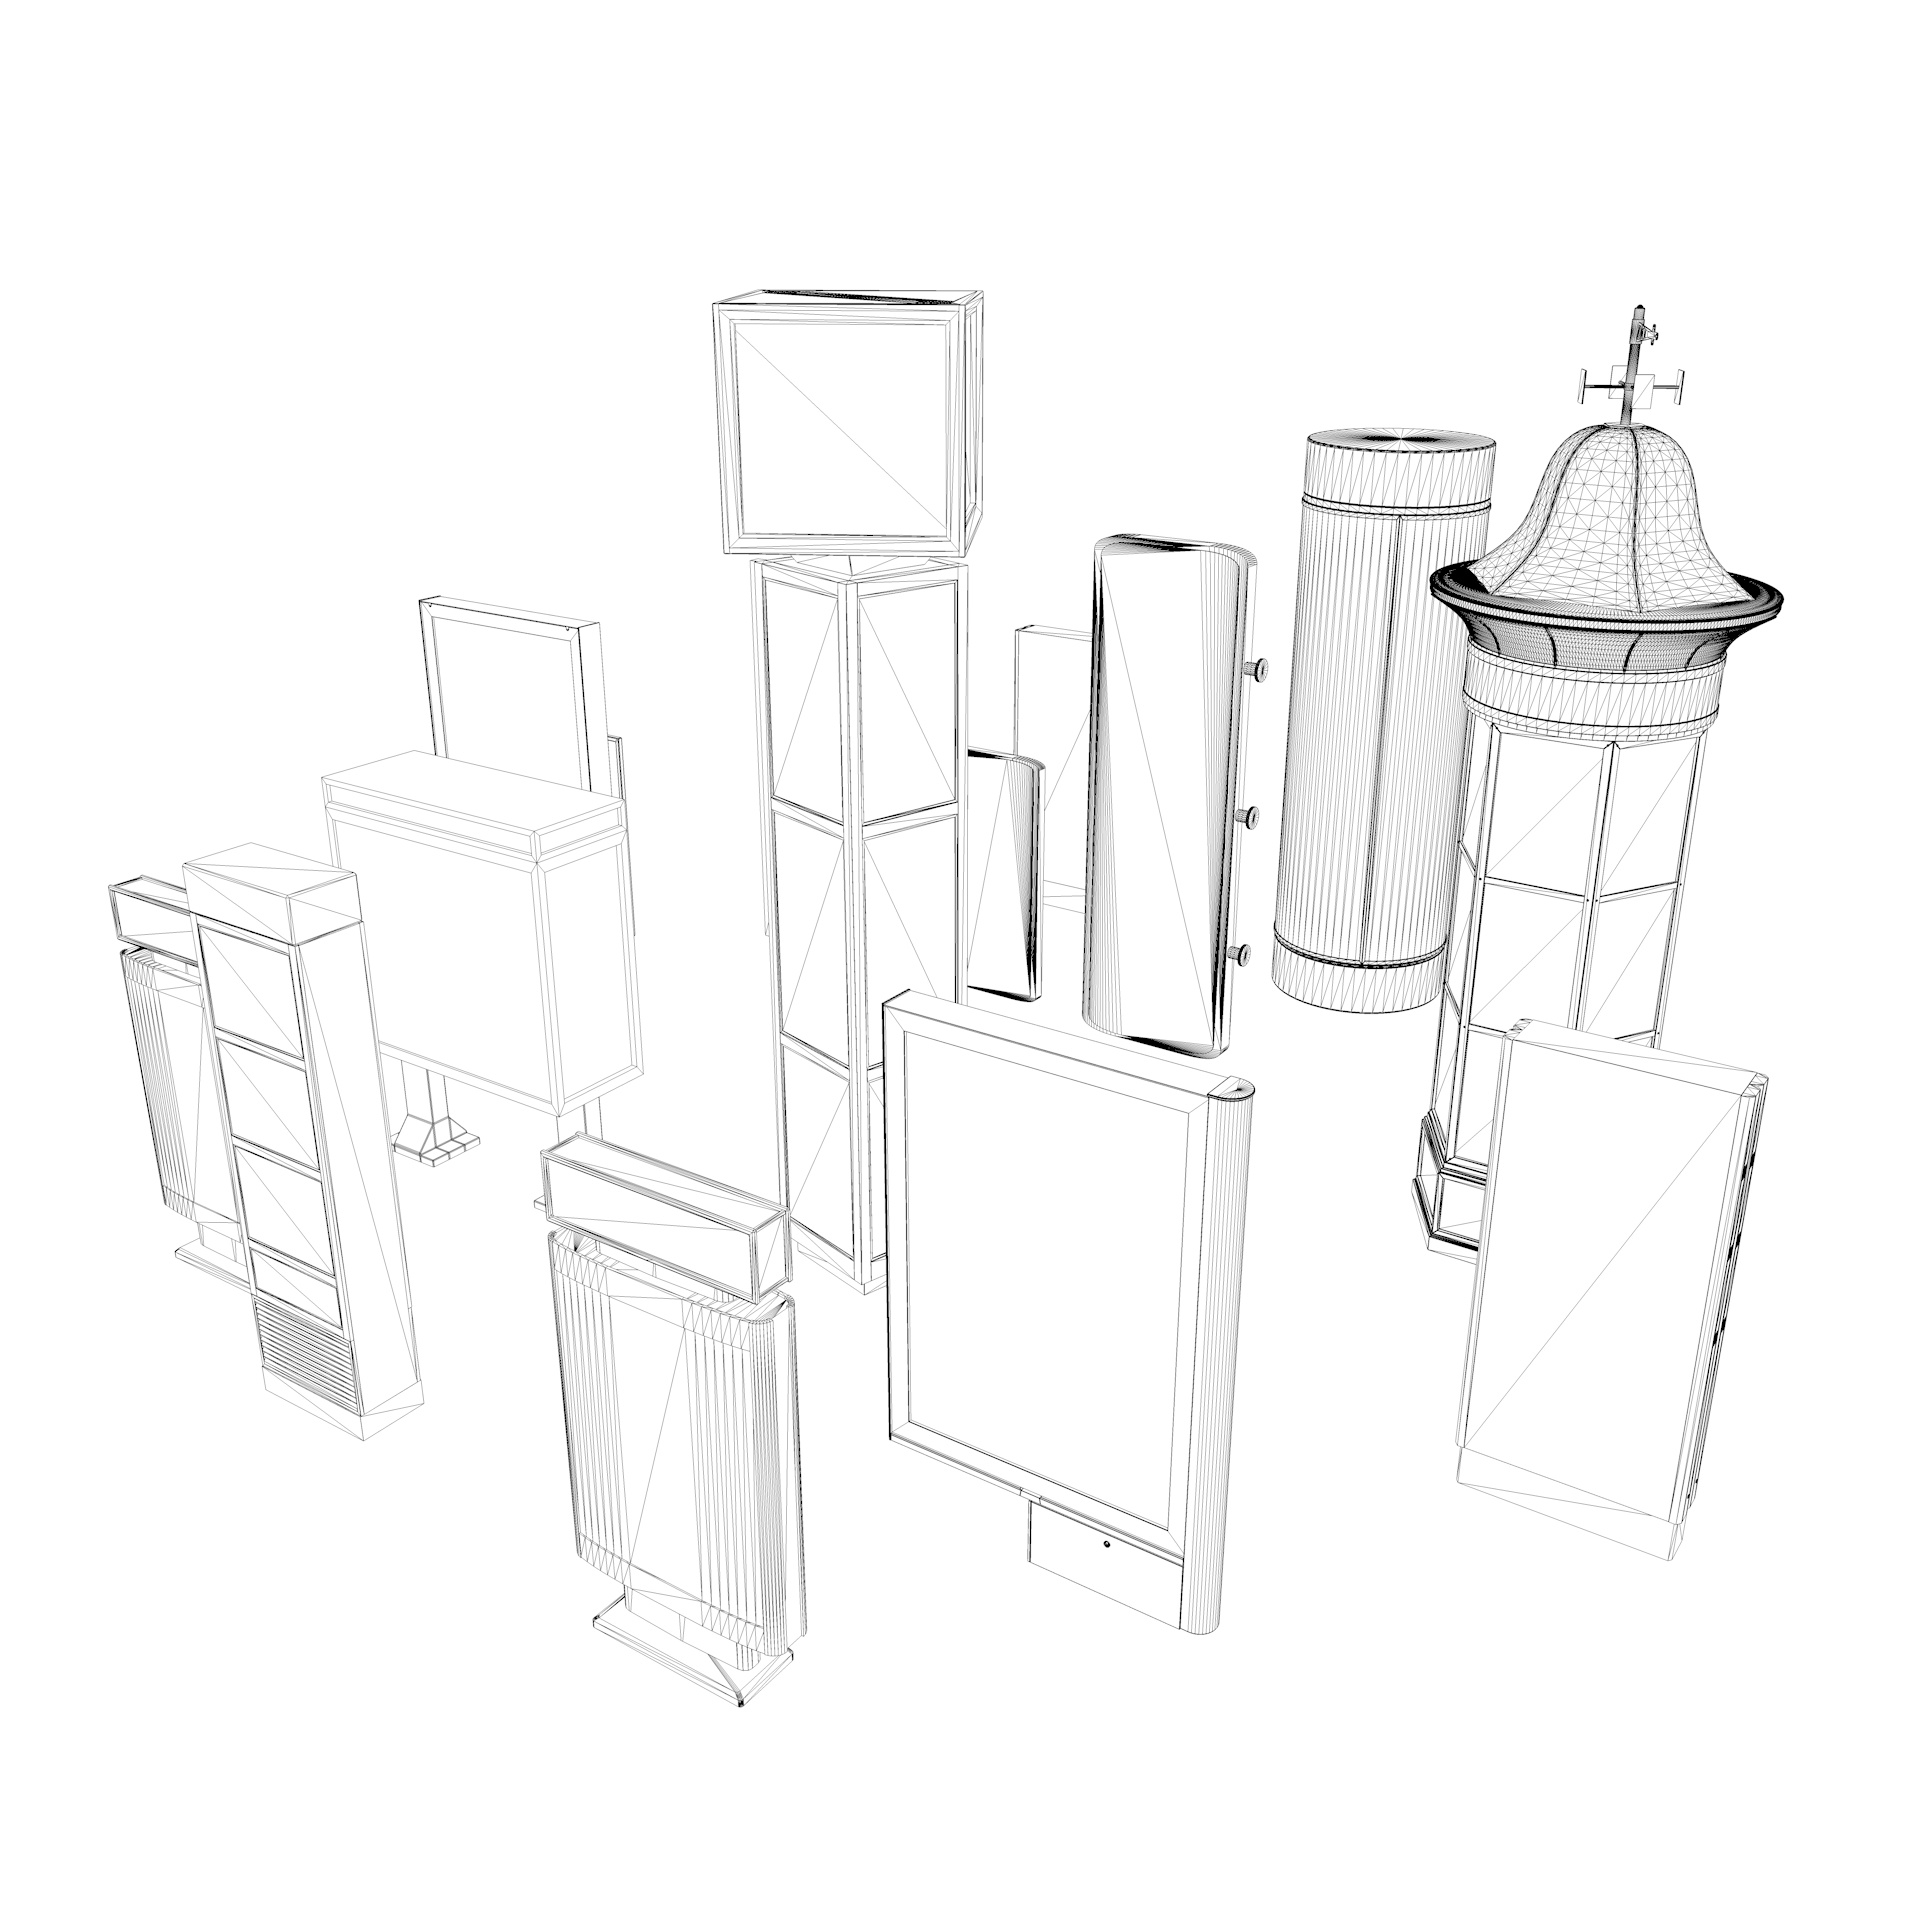 نموذج ثلاثي الأبعاد لطقم صندوق الضوء